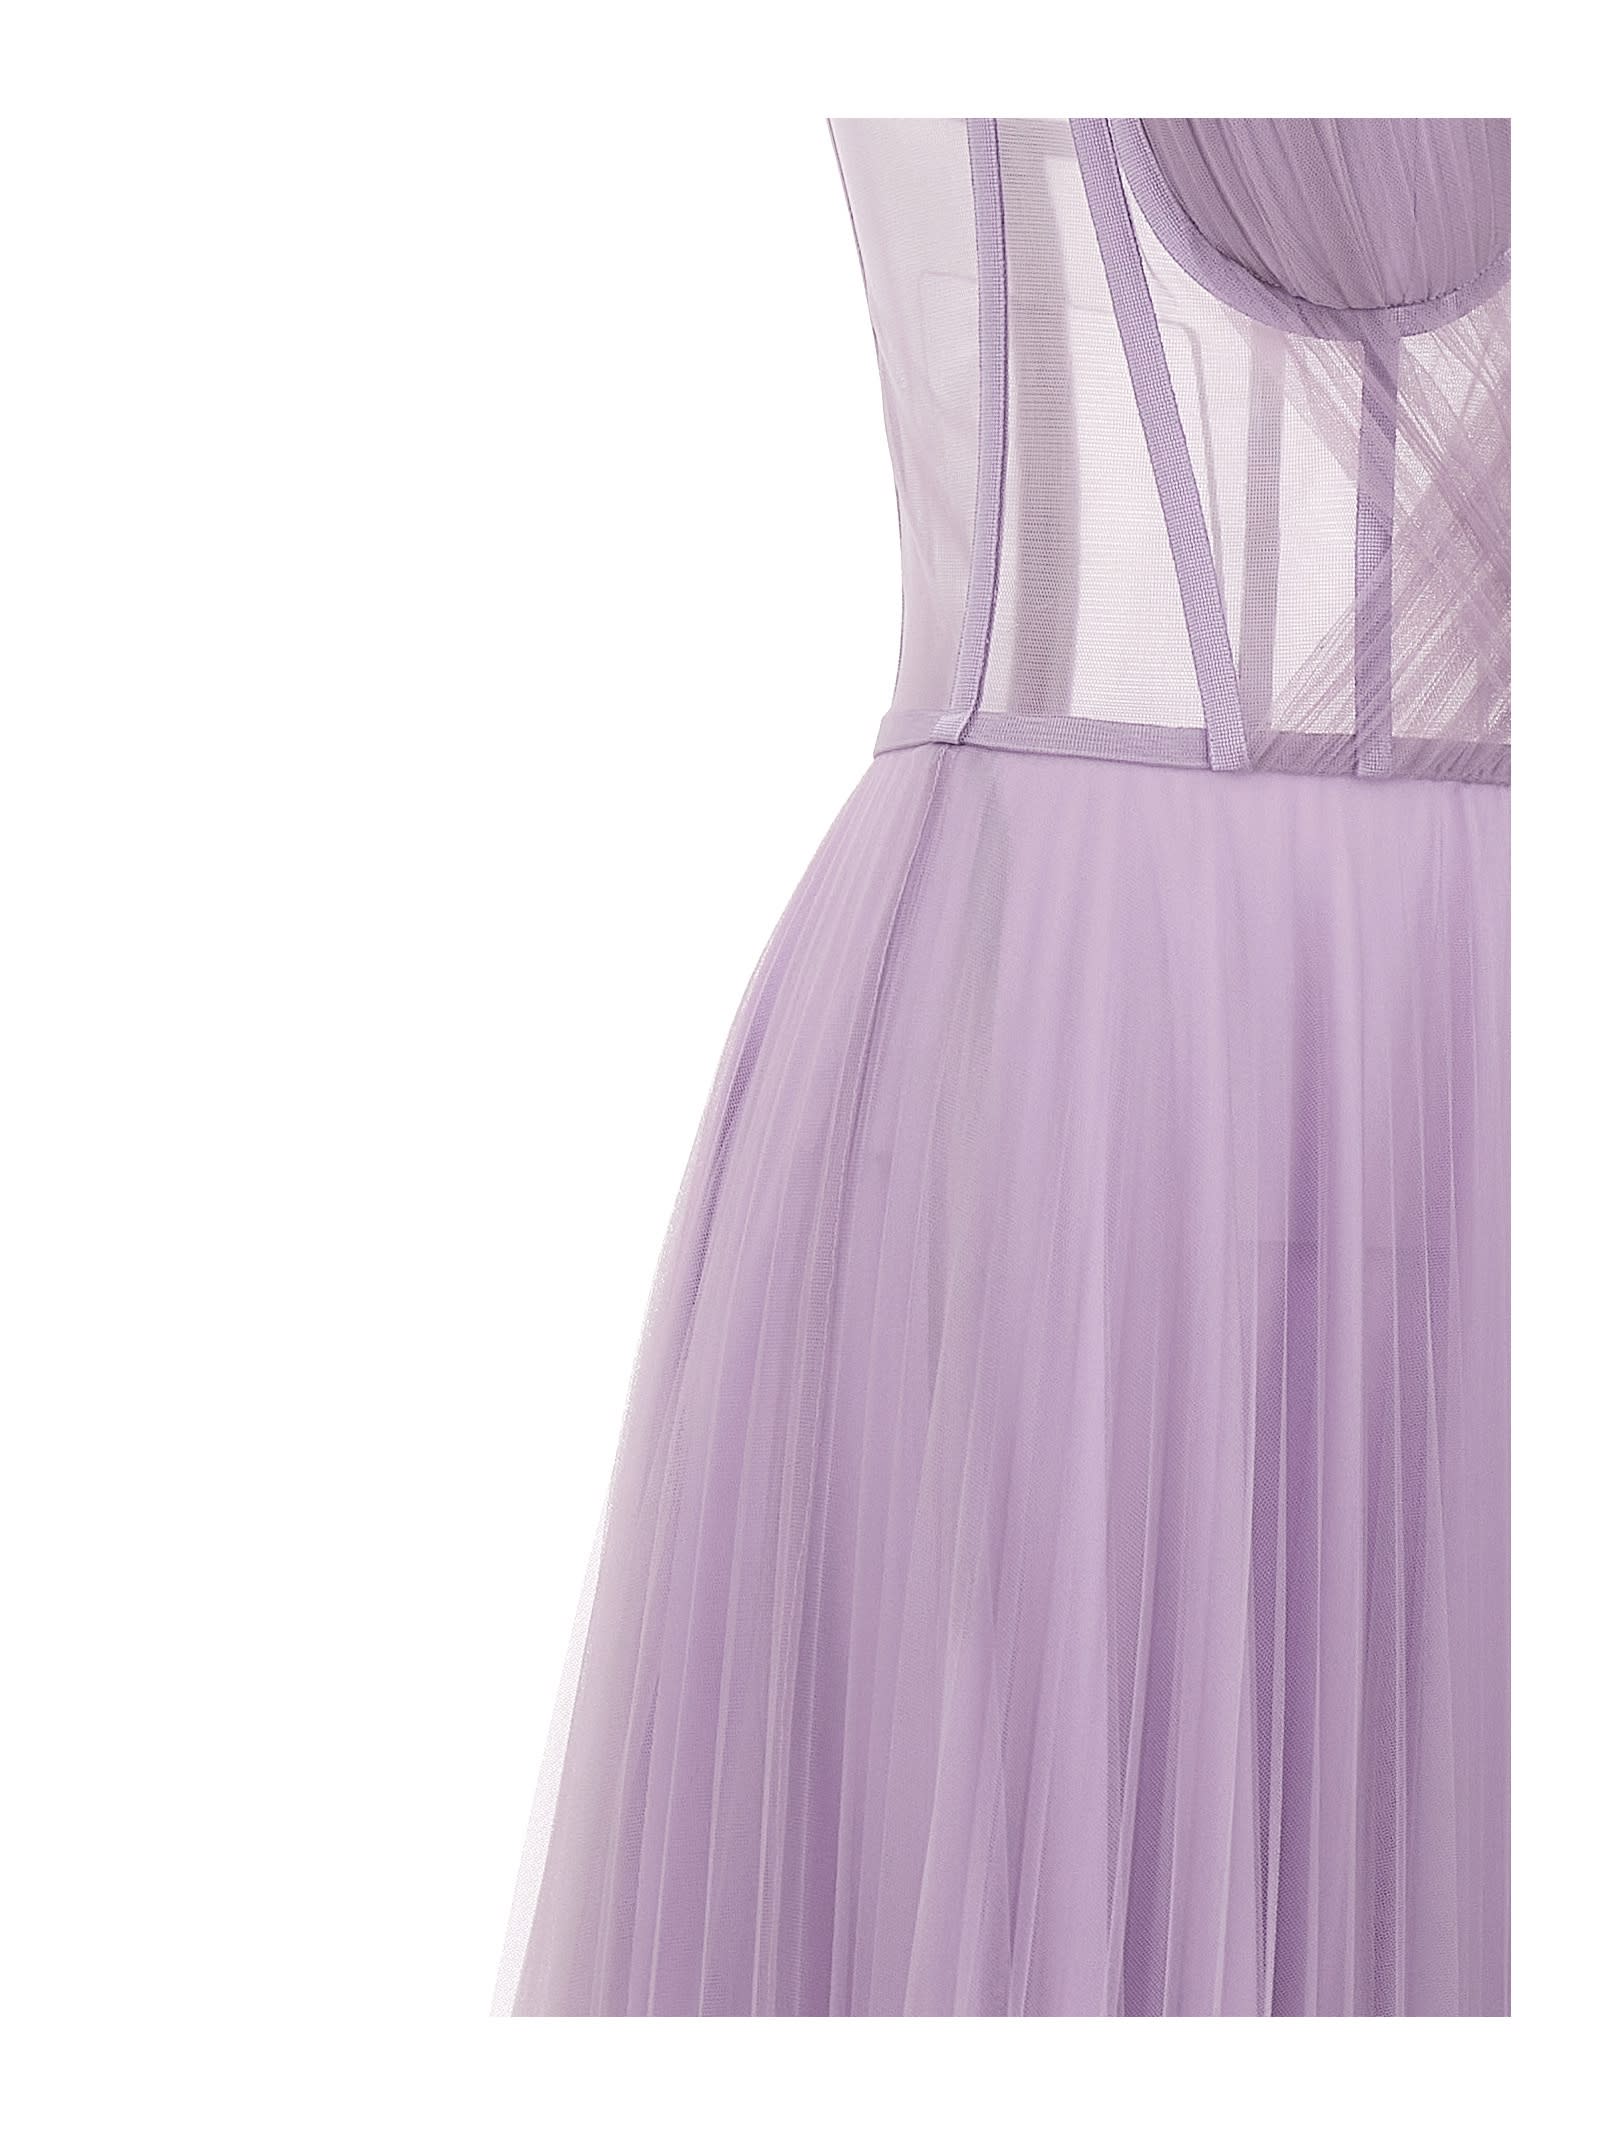 Shop 19:13 Dresscode Long Tulle Dress In Purple